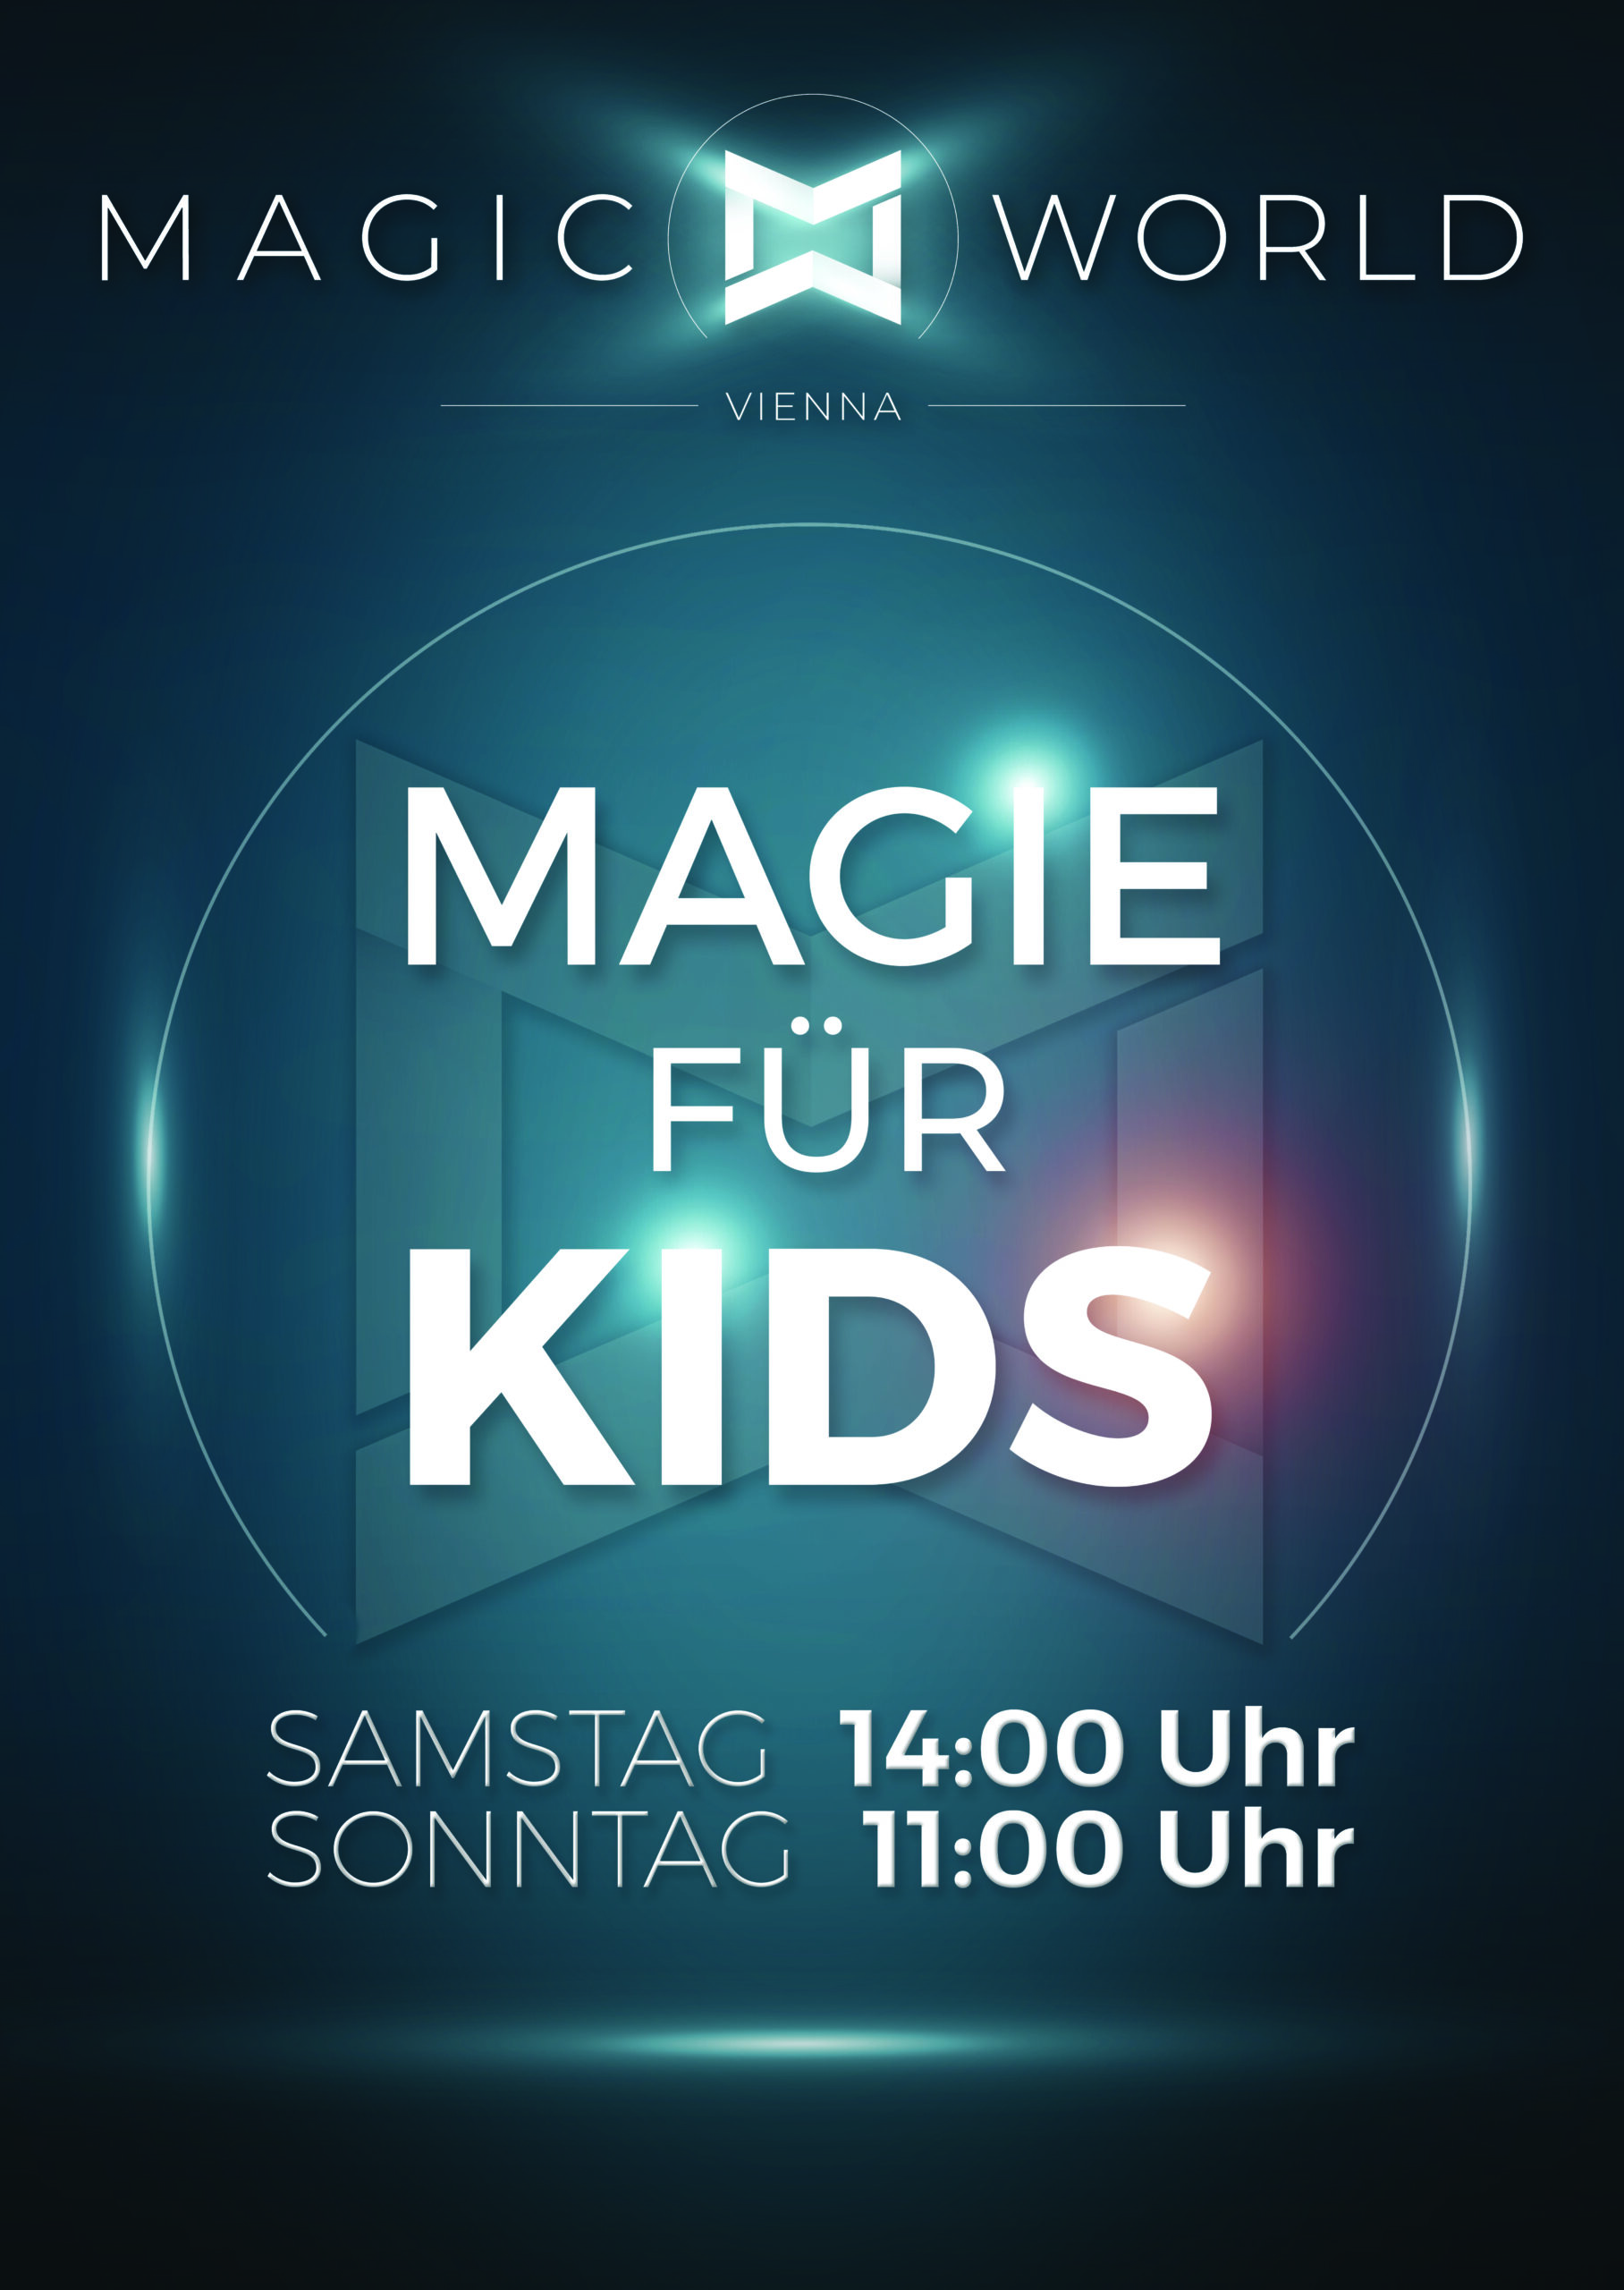 Magic World Vienna – Magie für Kids